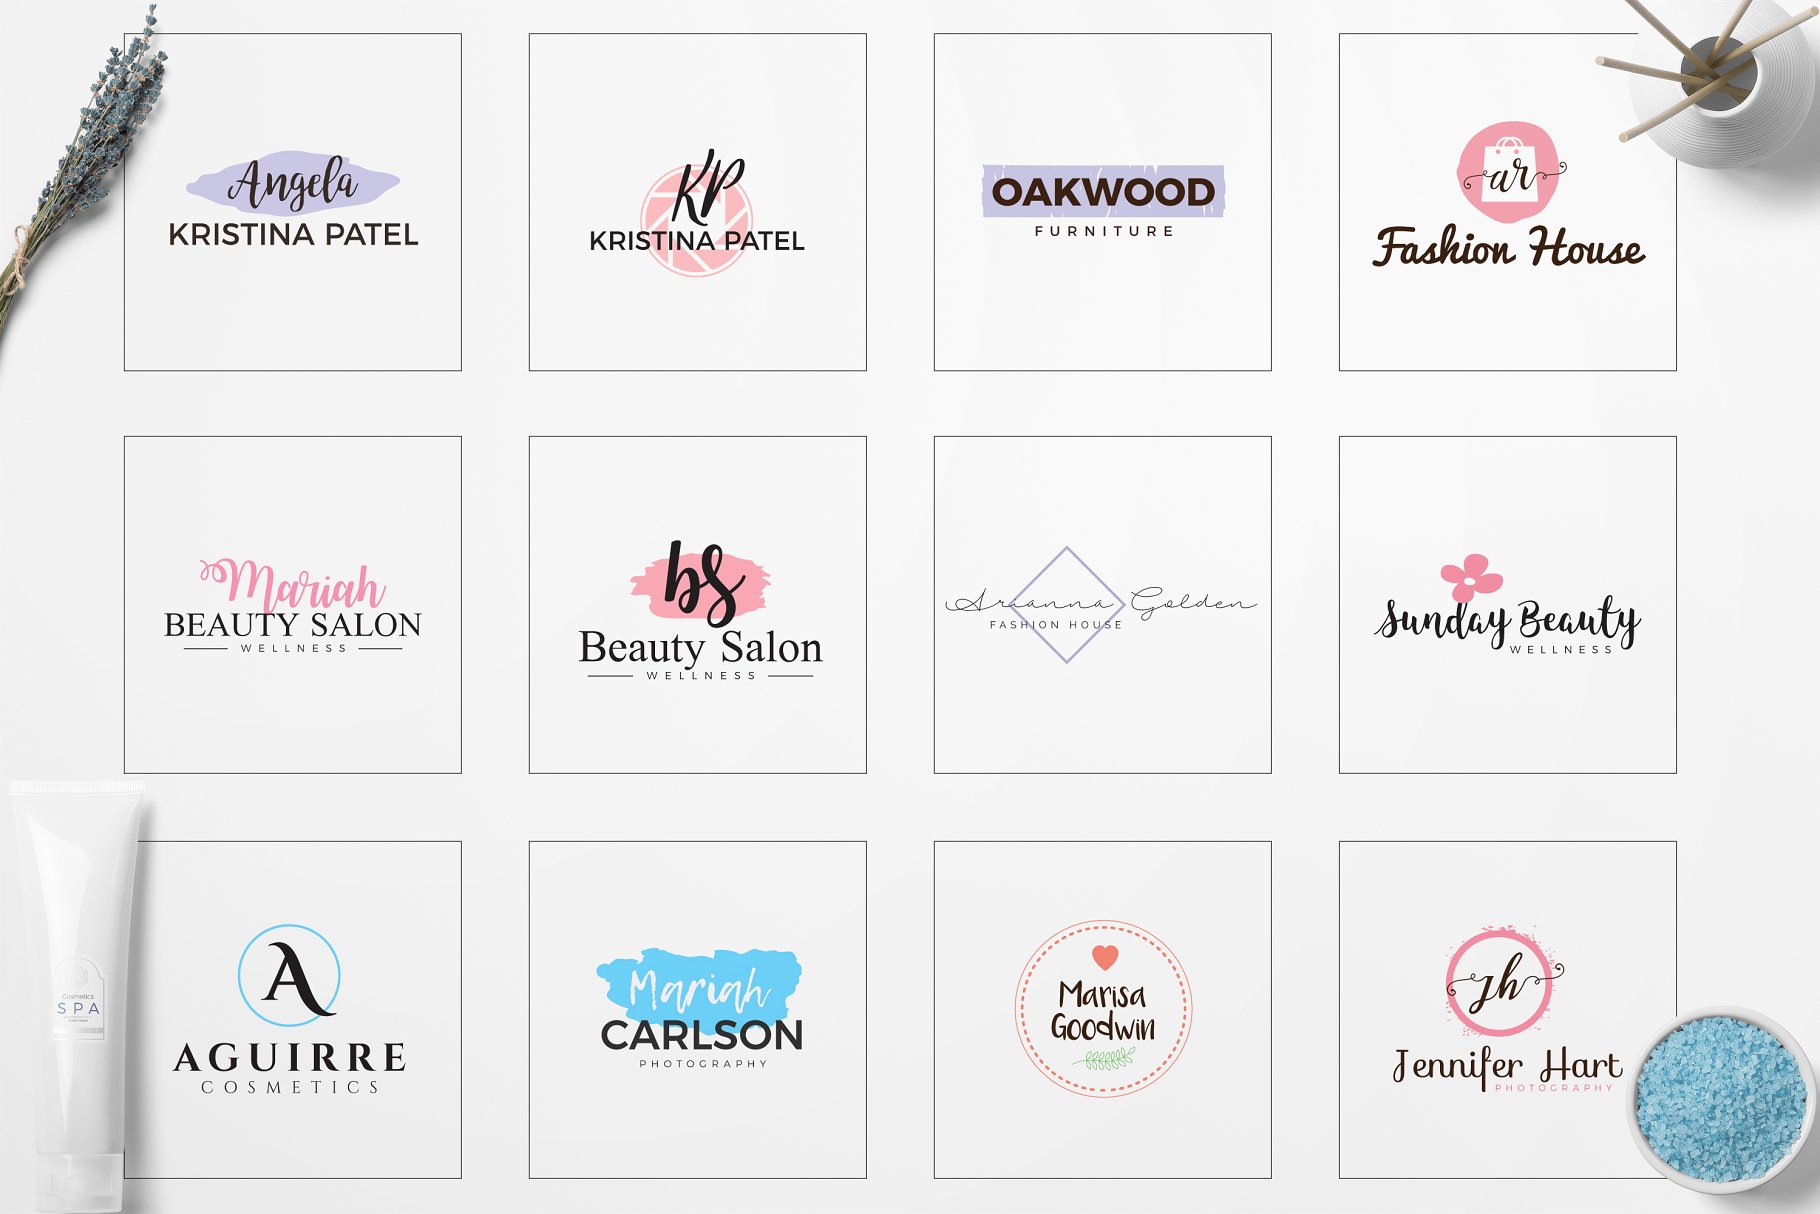 女性简约品牌Logo标志设计素材包 Feminine Minimal Branding Logo Pack插图(4)